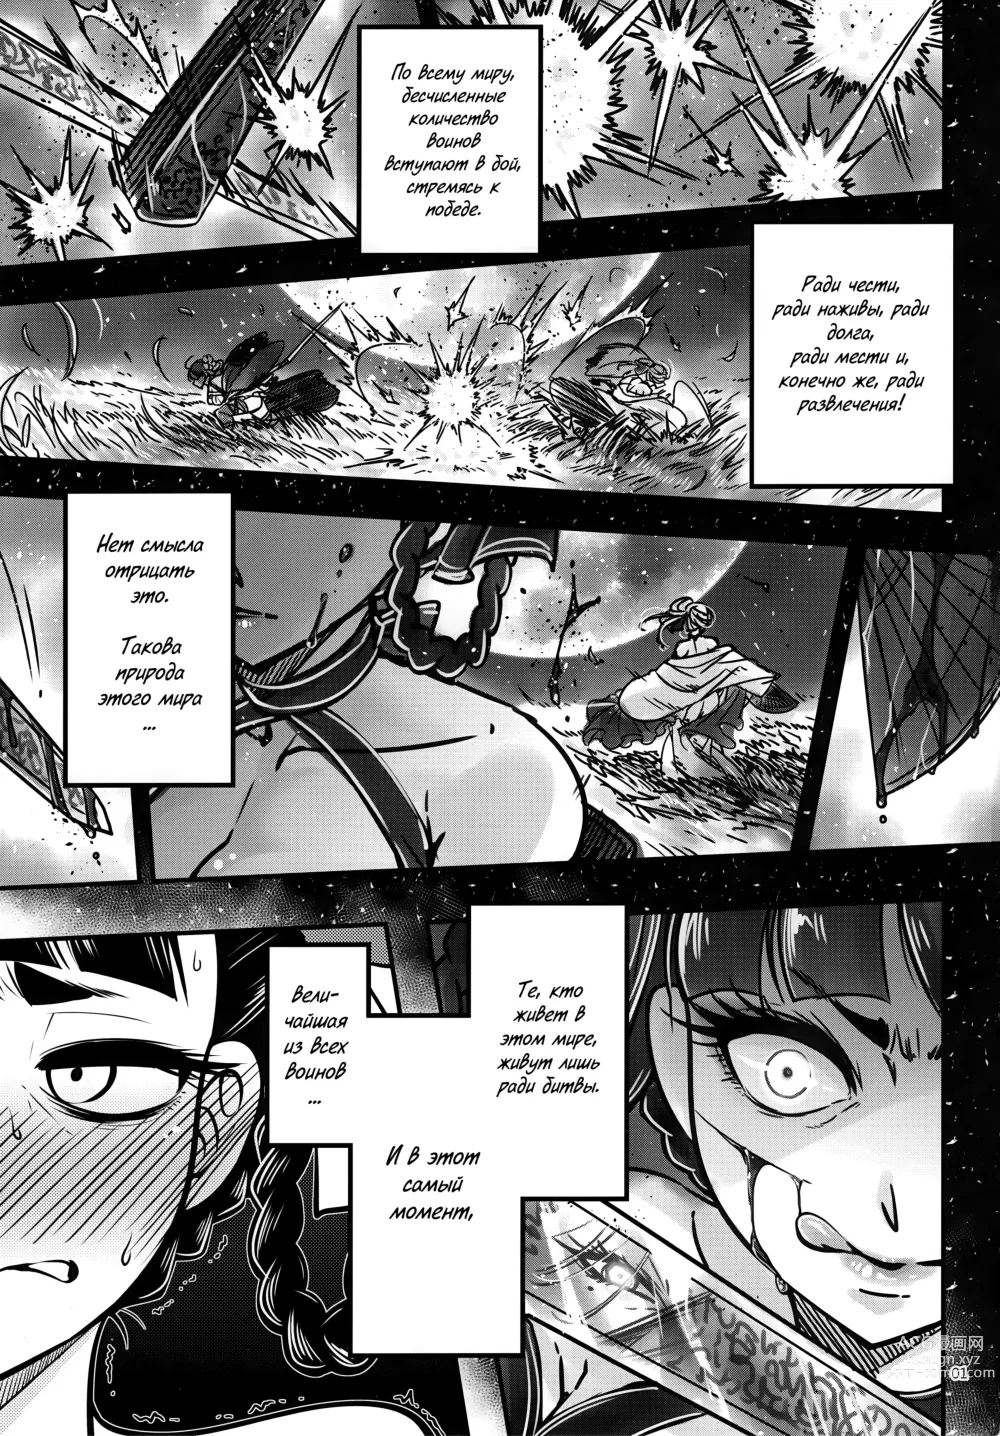 Page 2 of doujinshi Hyakkasou3 <<Hekigan Rasetsu no Gyakushuu!>>